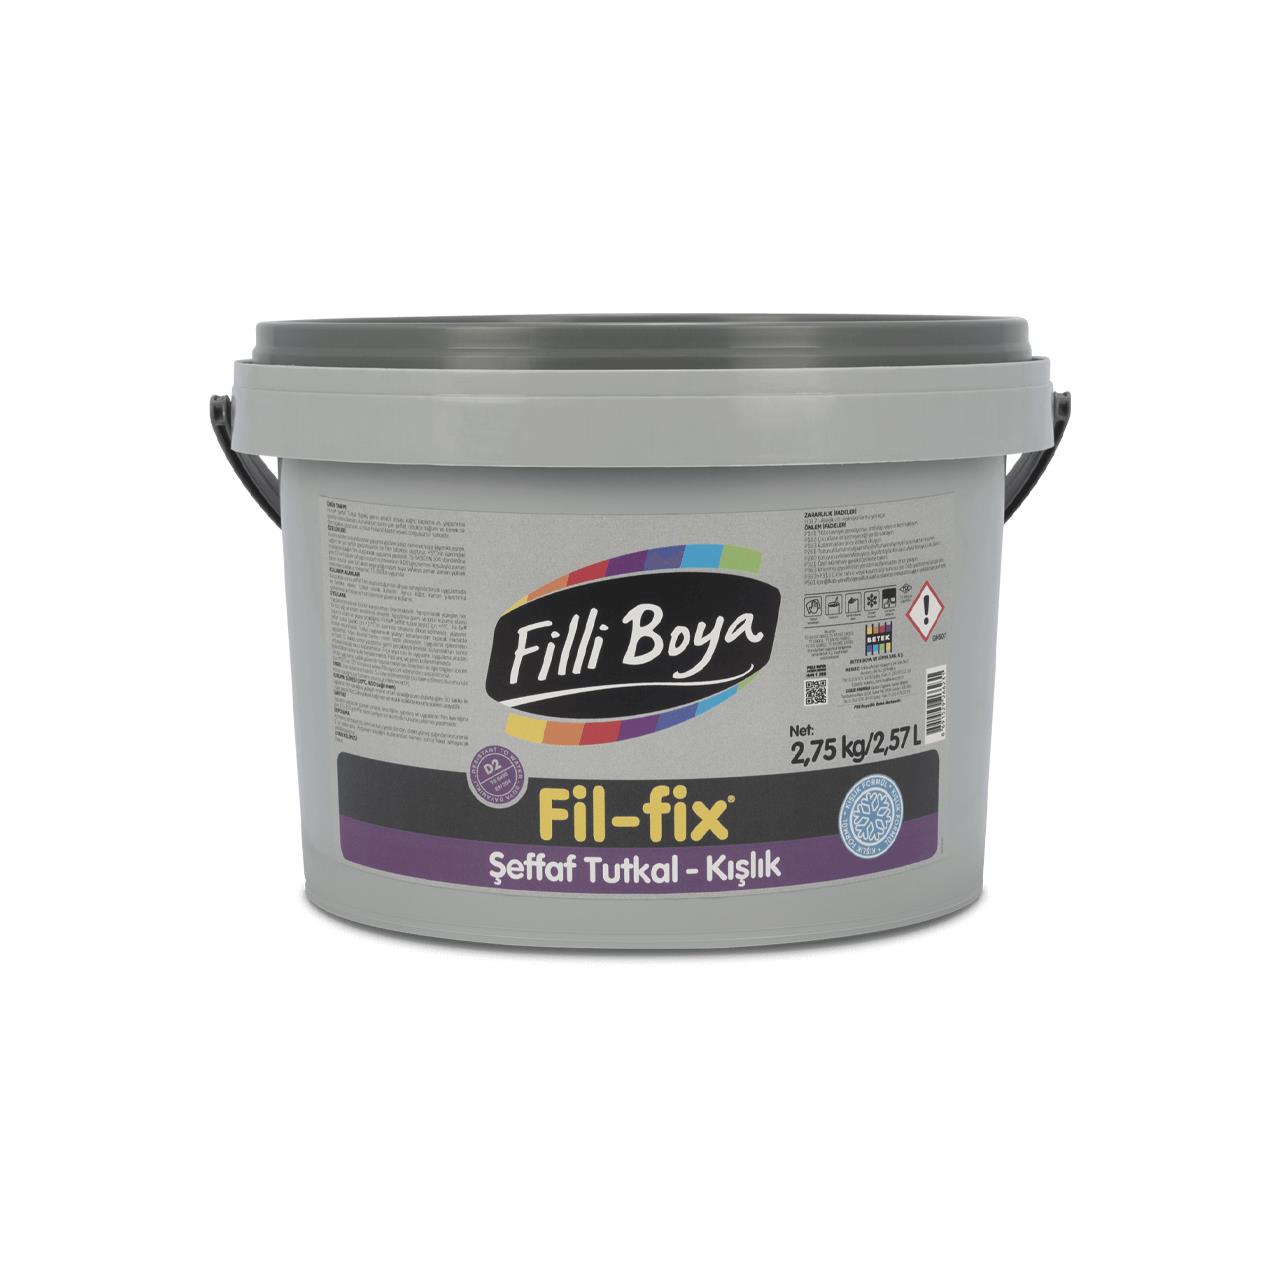 Filli Boya Fil-fix Şeffaf Tutkal Kışlık 2,75 KG.-Tutkal ve Yapıştırıcılar-FLZ00604